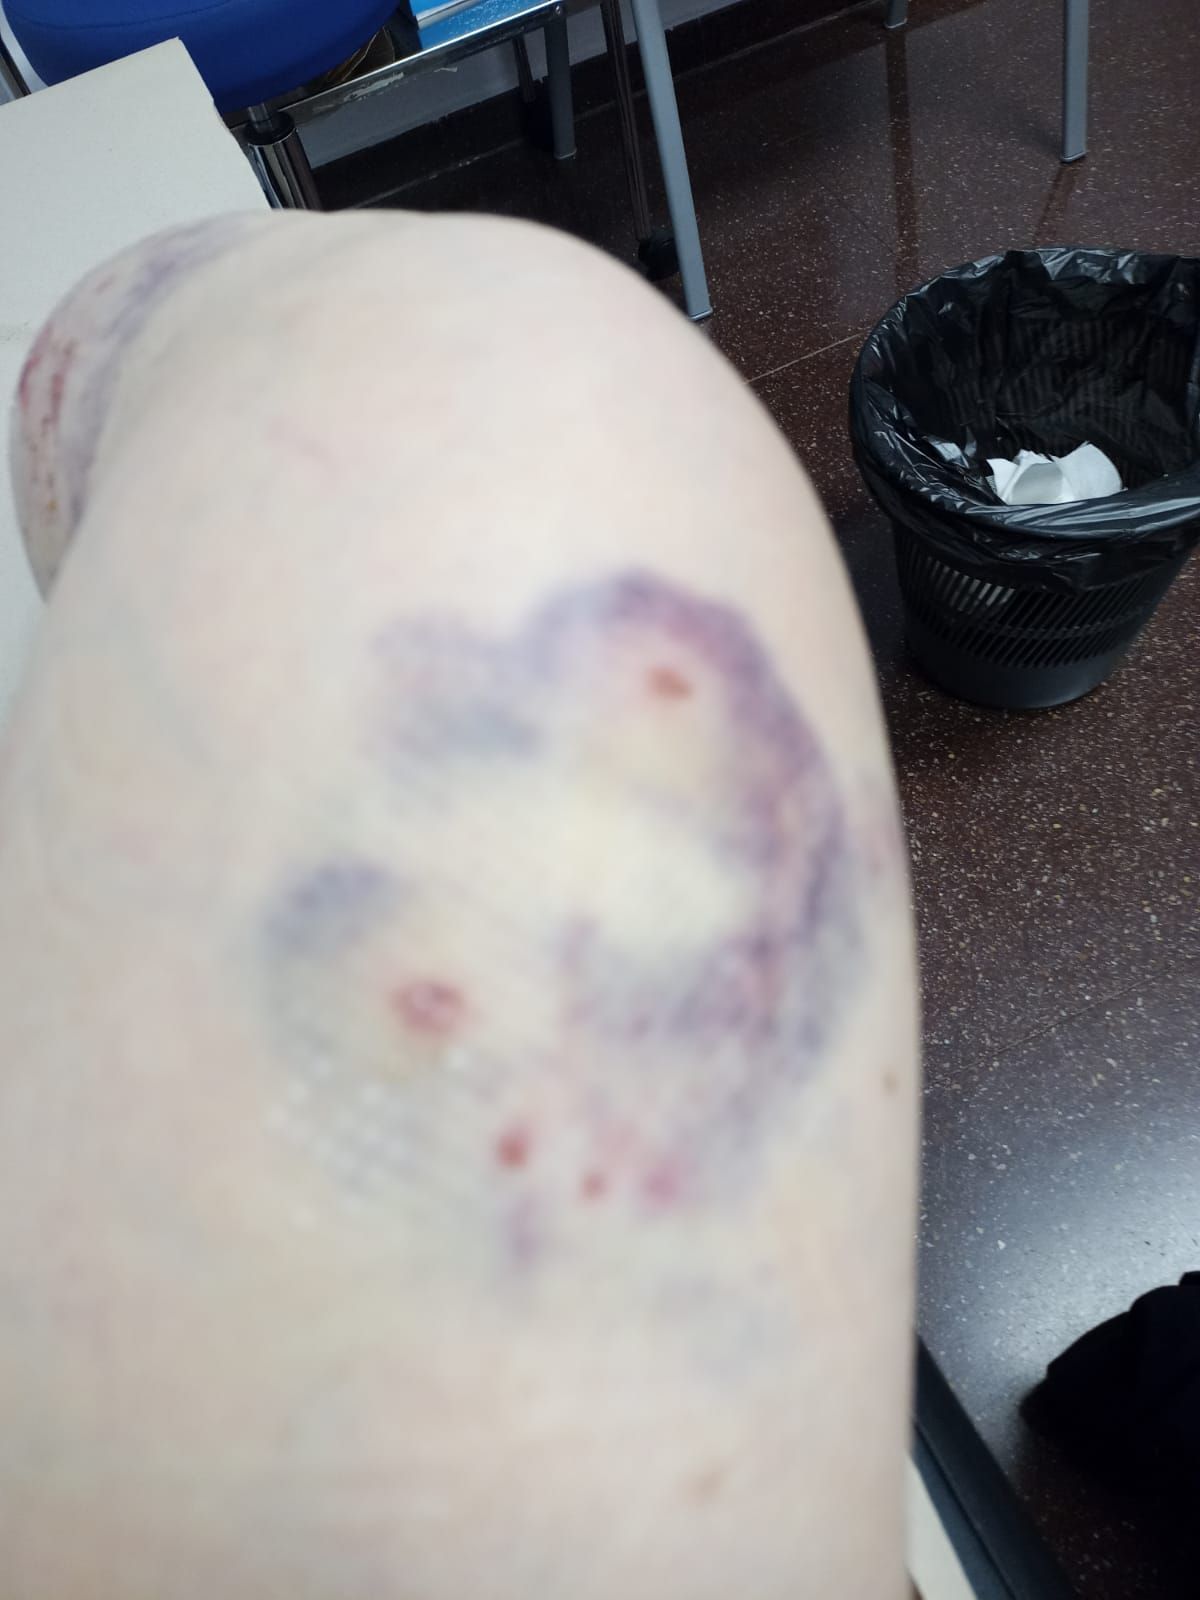 Las heridas causadas por los pitbulls en la pierna de la víctima, dos días después del ataque.